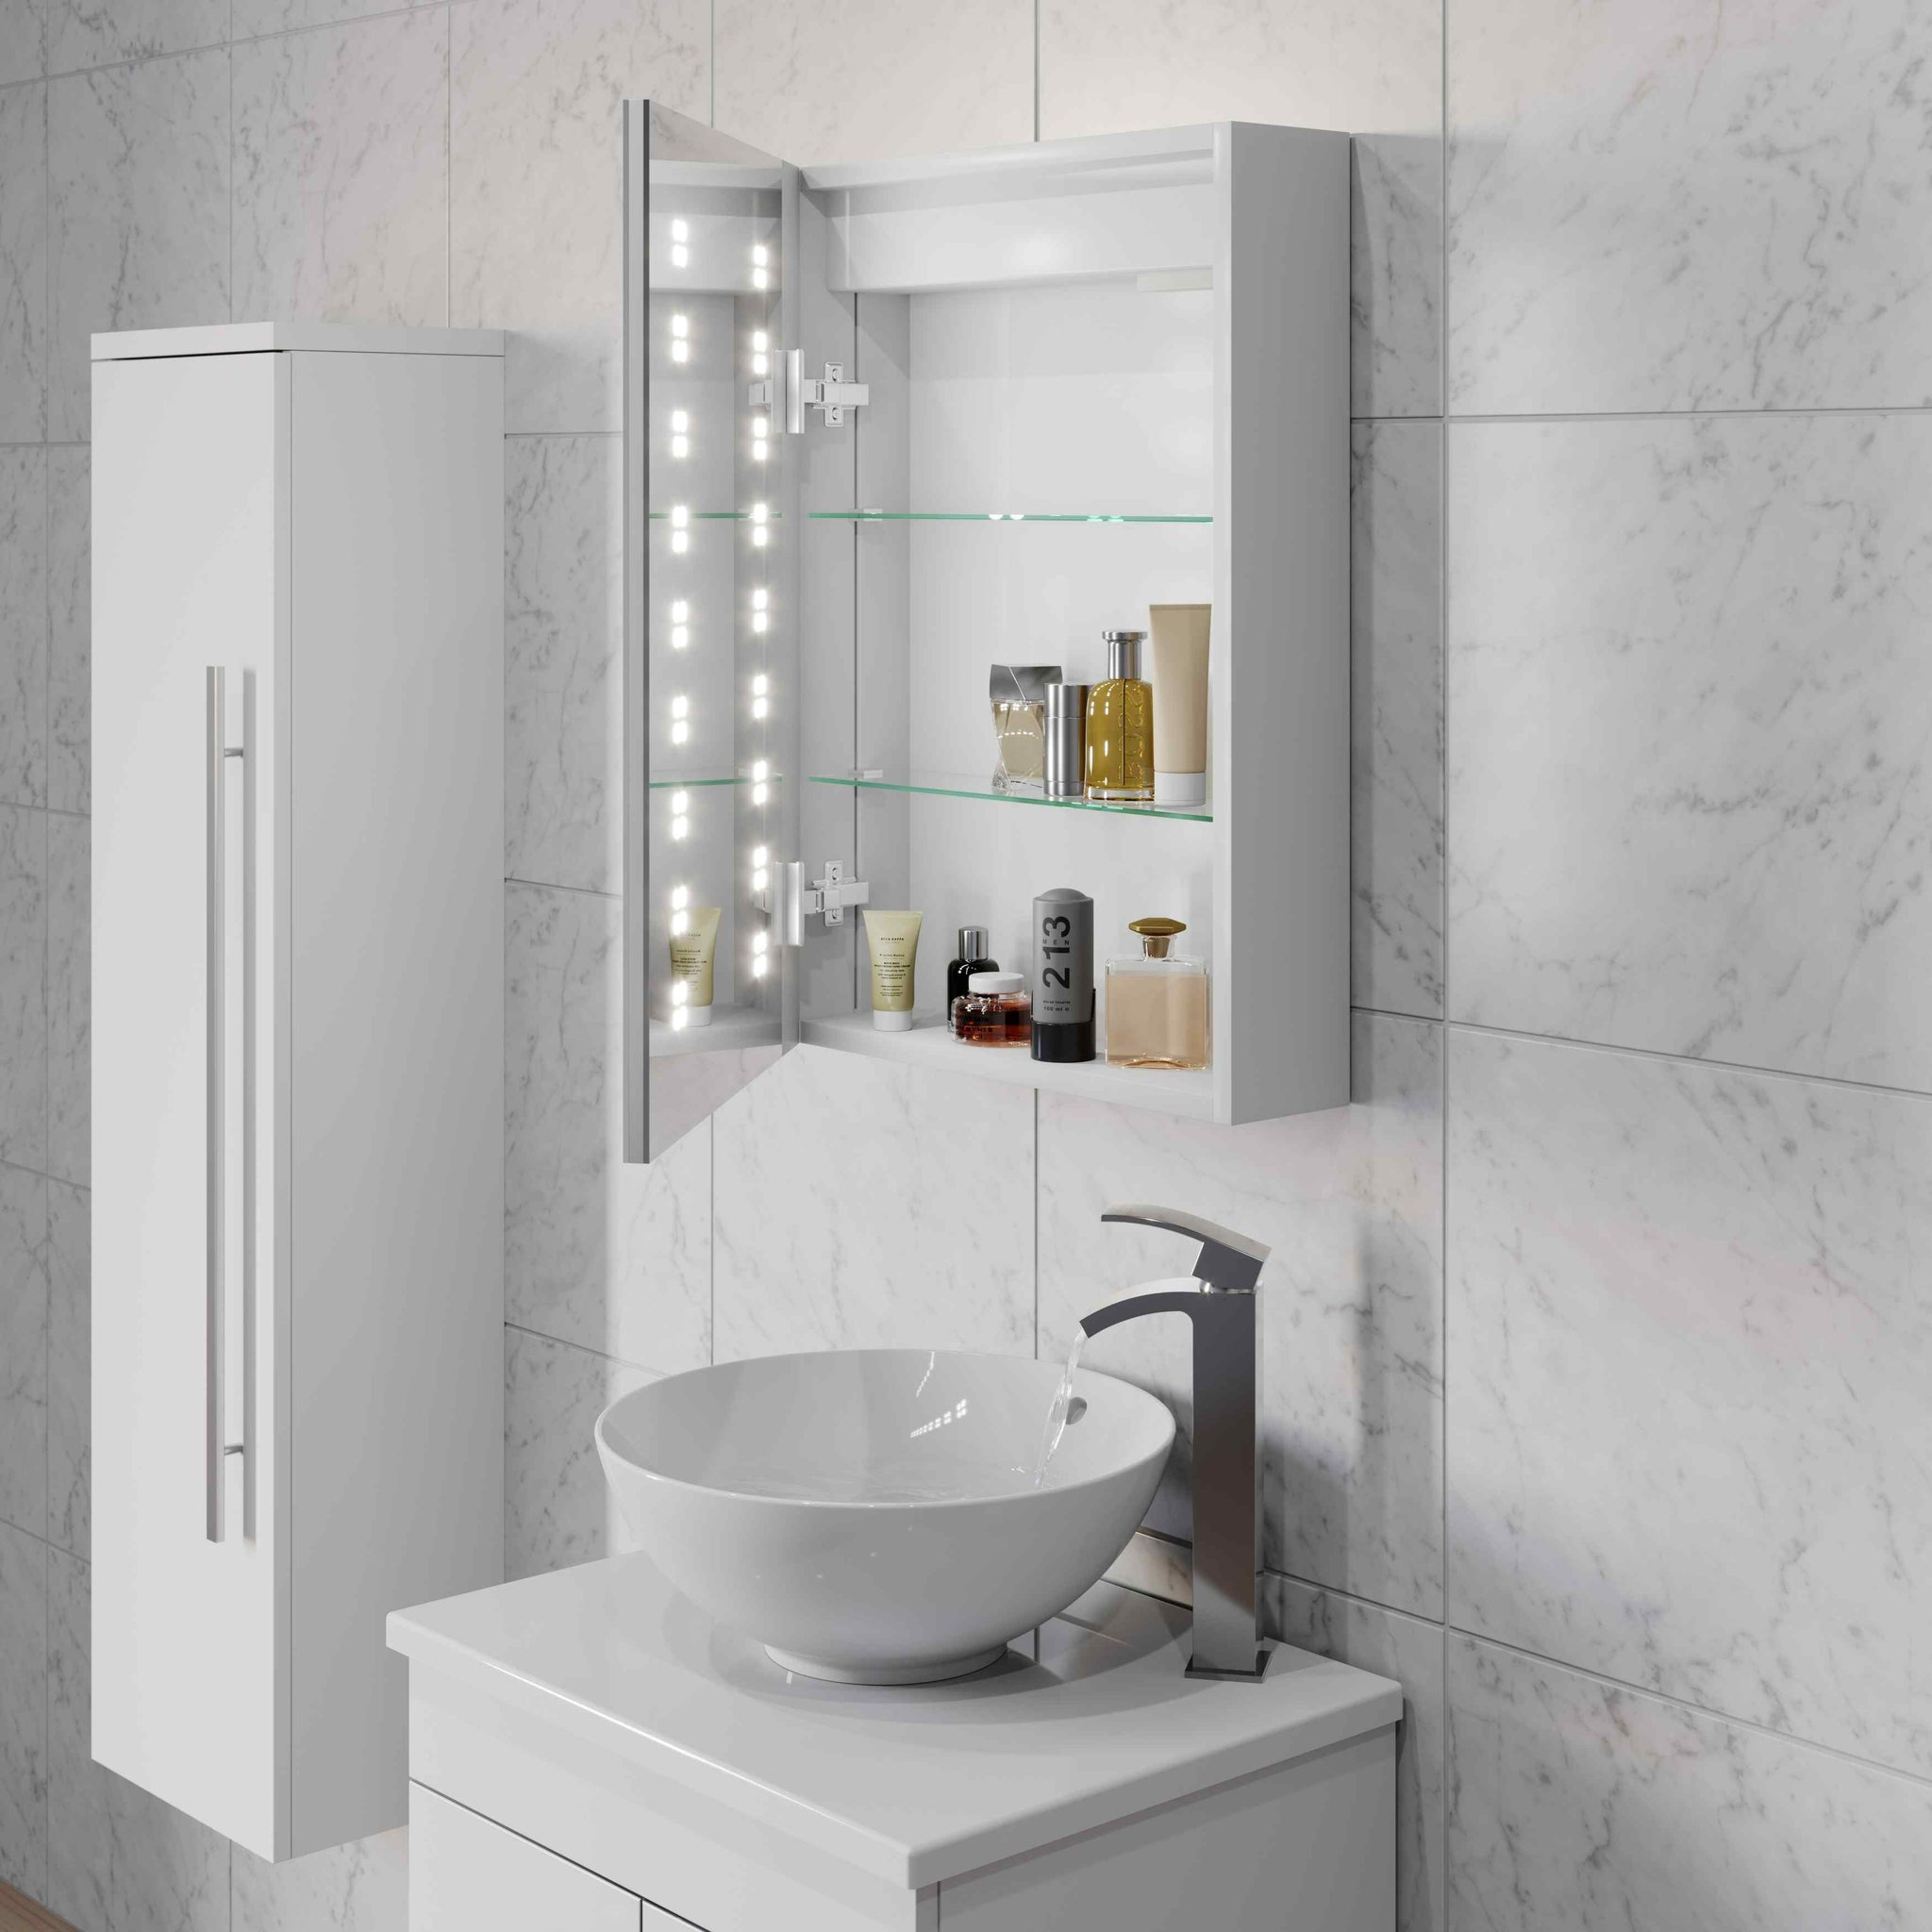 Modern bathroom lighting fixtures shining brightly in a stylish bathroom.